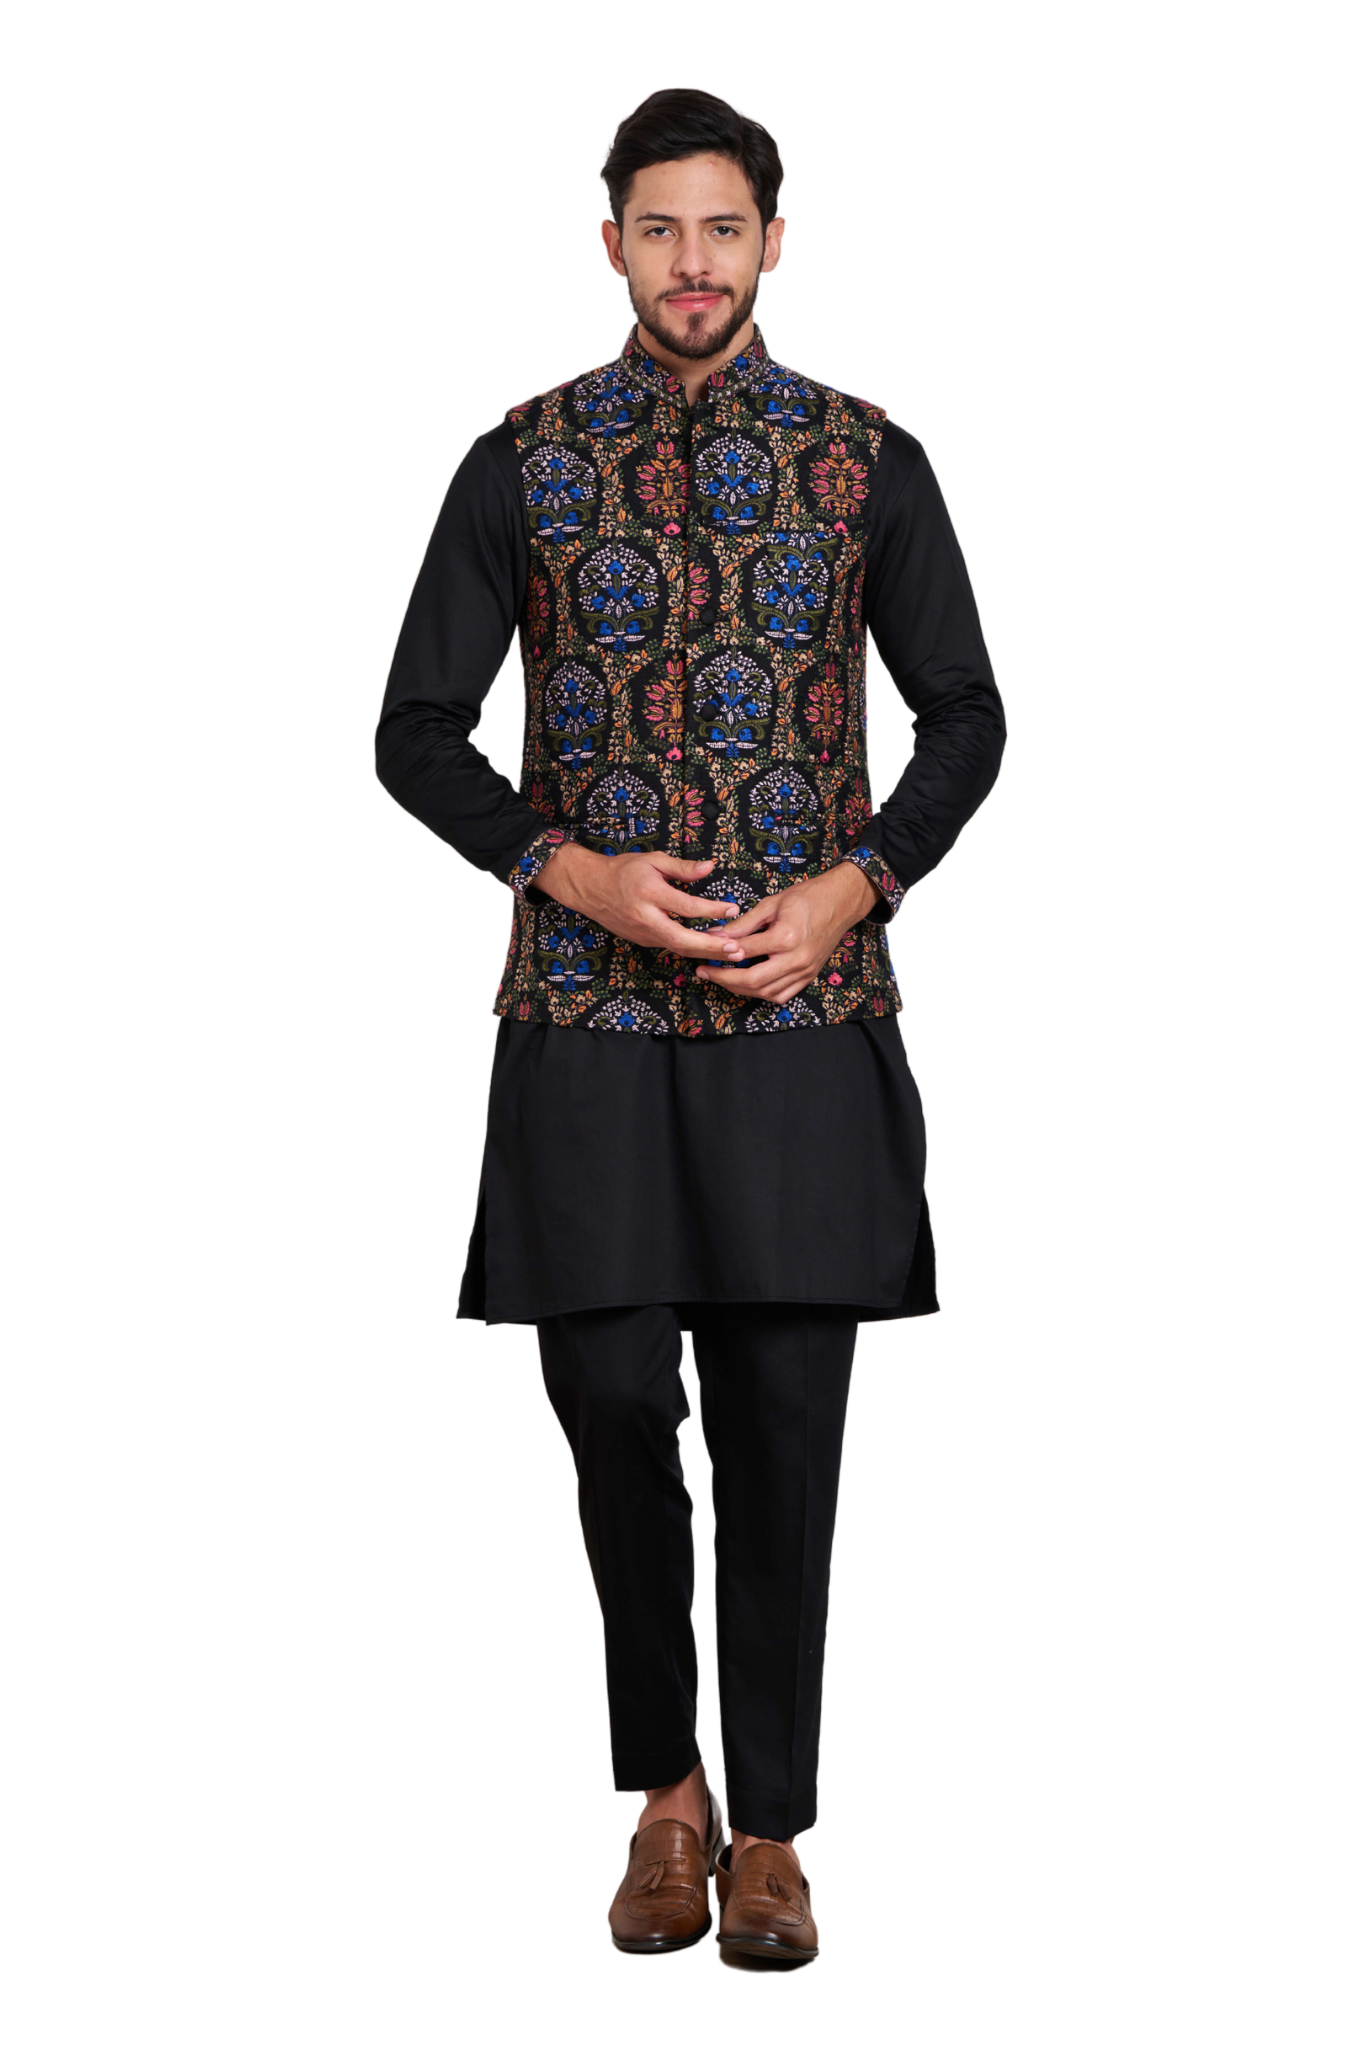 Floral Embroidered Men's Bandi Jacket , Modi Jacket